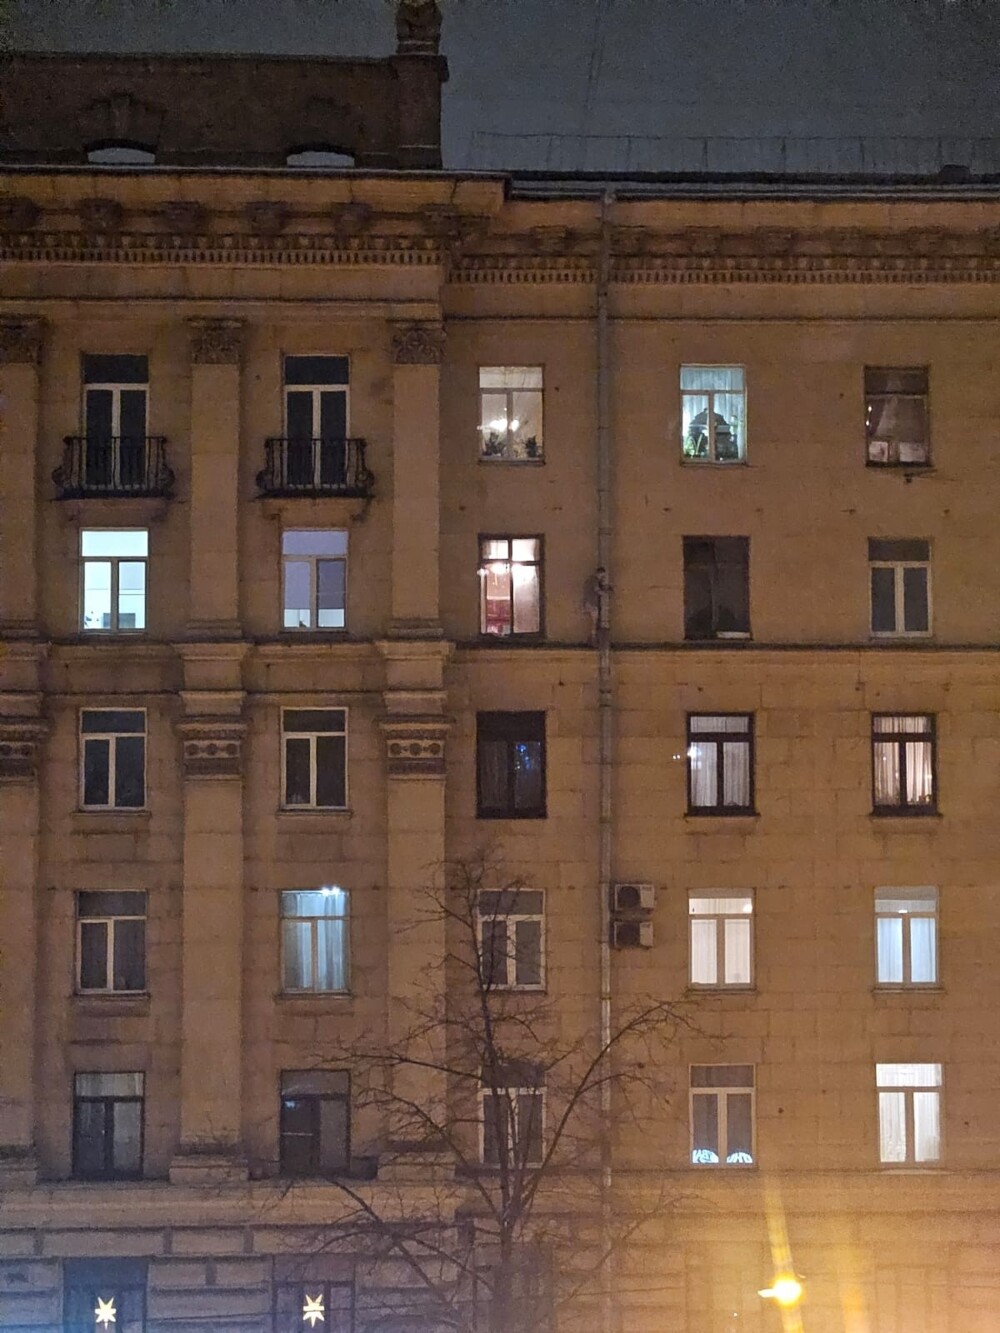 "Вон там этот чел с голой жо": житель Петербурга устроил обнажённый перфоманс на водосточной трубе